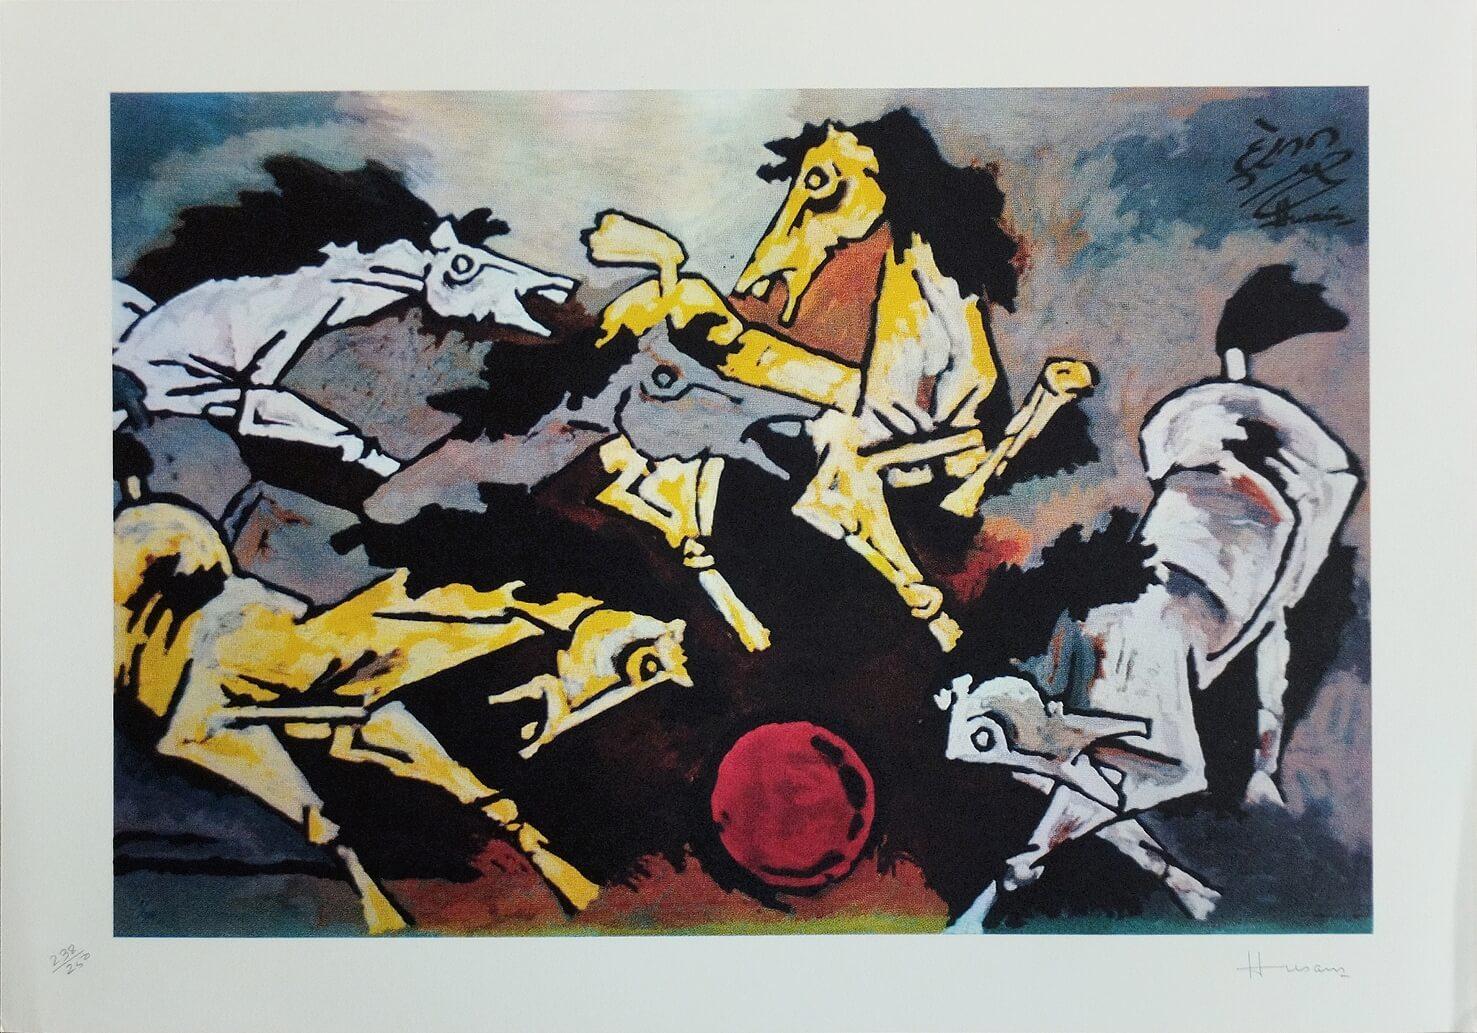 Pferdeserie, Serigrafie auf Papier, Weiß, Gelb von Modern Artist M.F. Husain